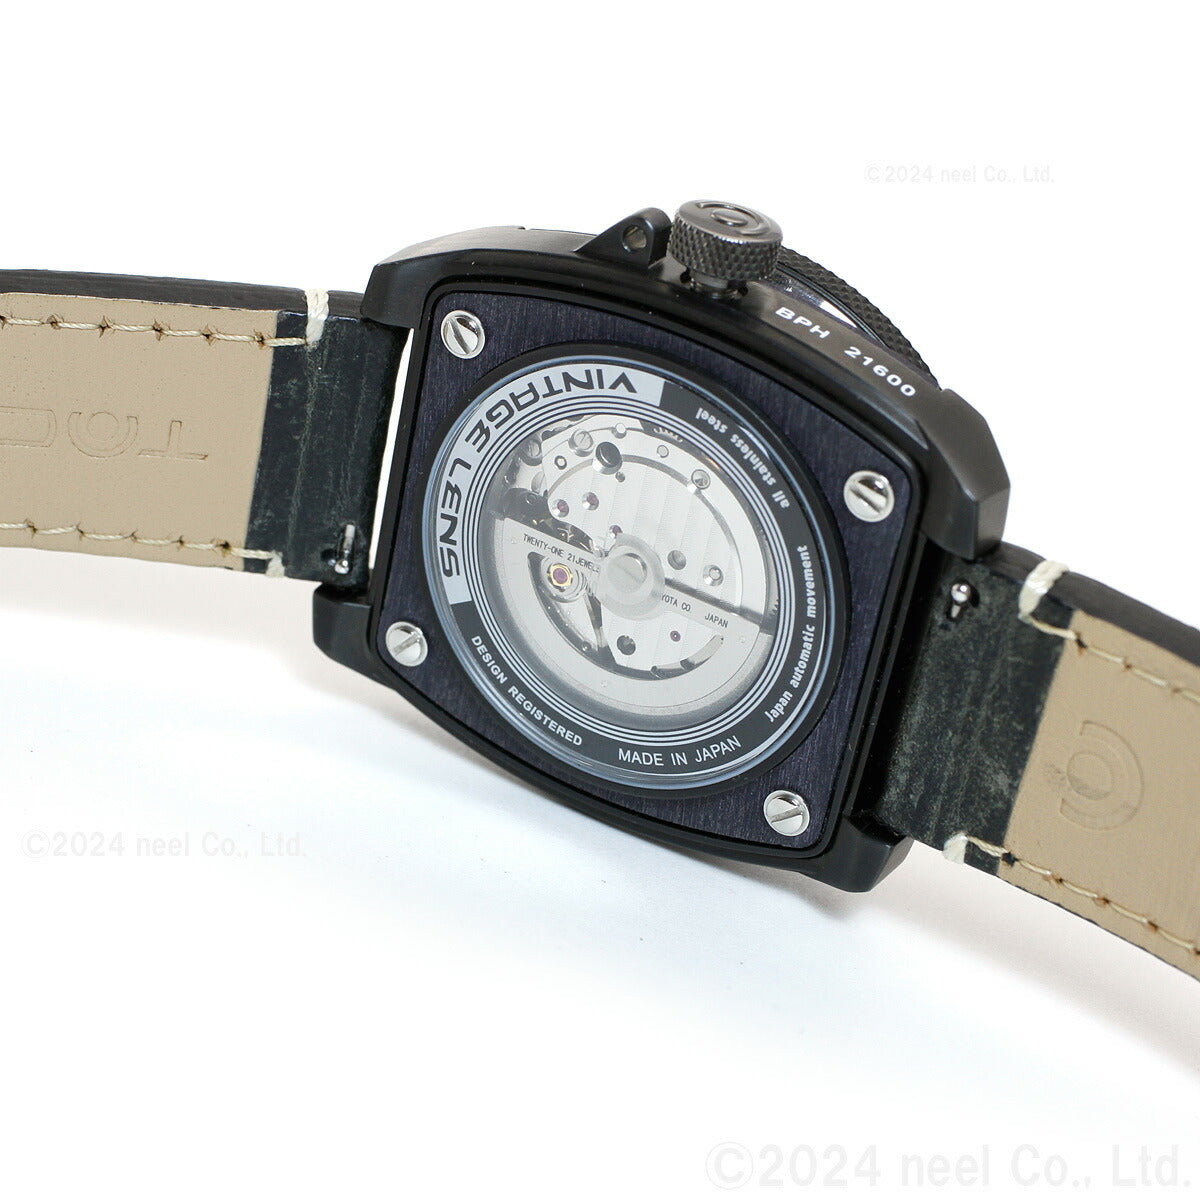 タックス TACS 腕時計 メンズ ヴィンテージレンズ オートマチック 2 VINTAGE LENS AUTOMATIC II 自動巻き TS1803C